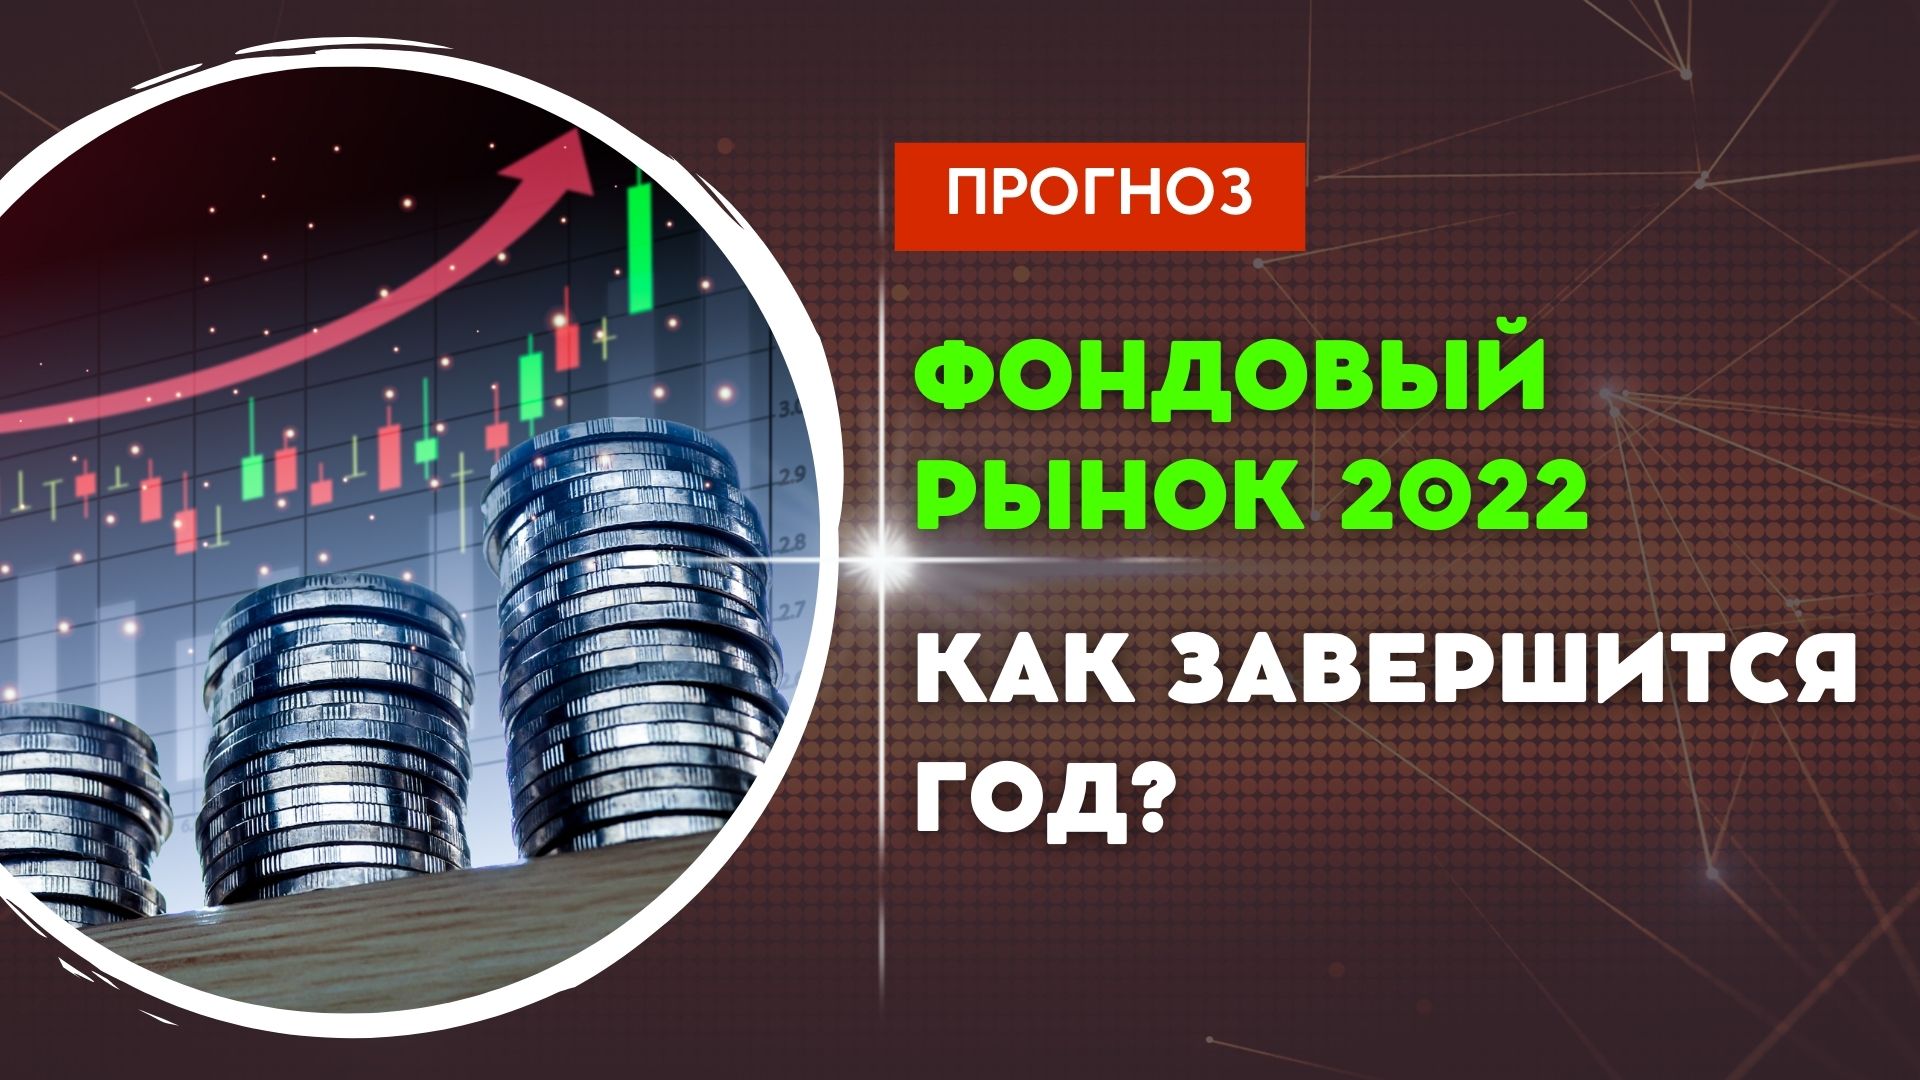 Прогнозы экспертов. Что будет с фондовым рынком РФ по итогам 2022 года?